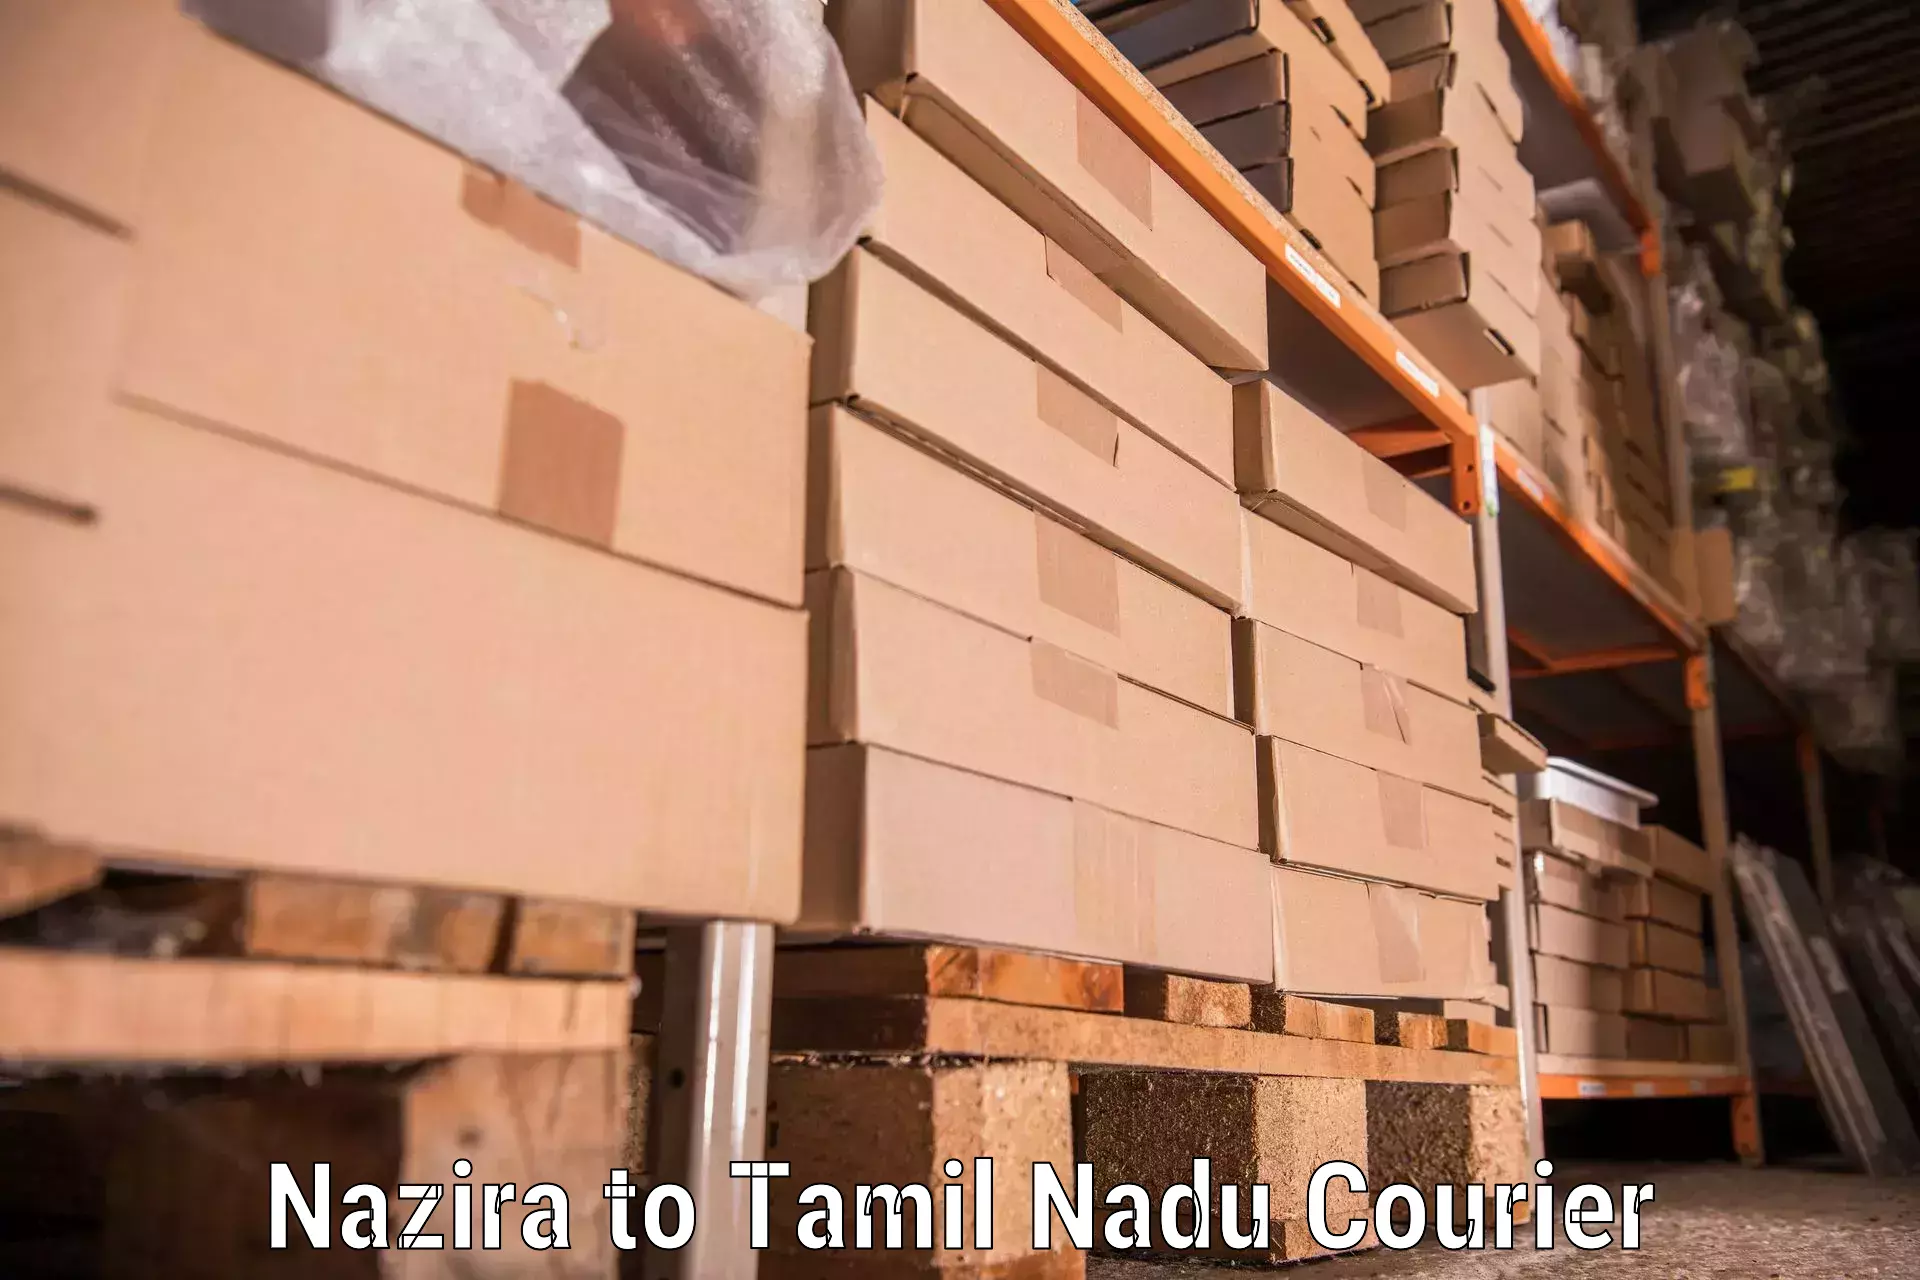 Furniture transport service Nazira to Tamil Nadu